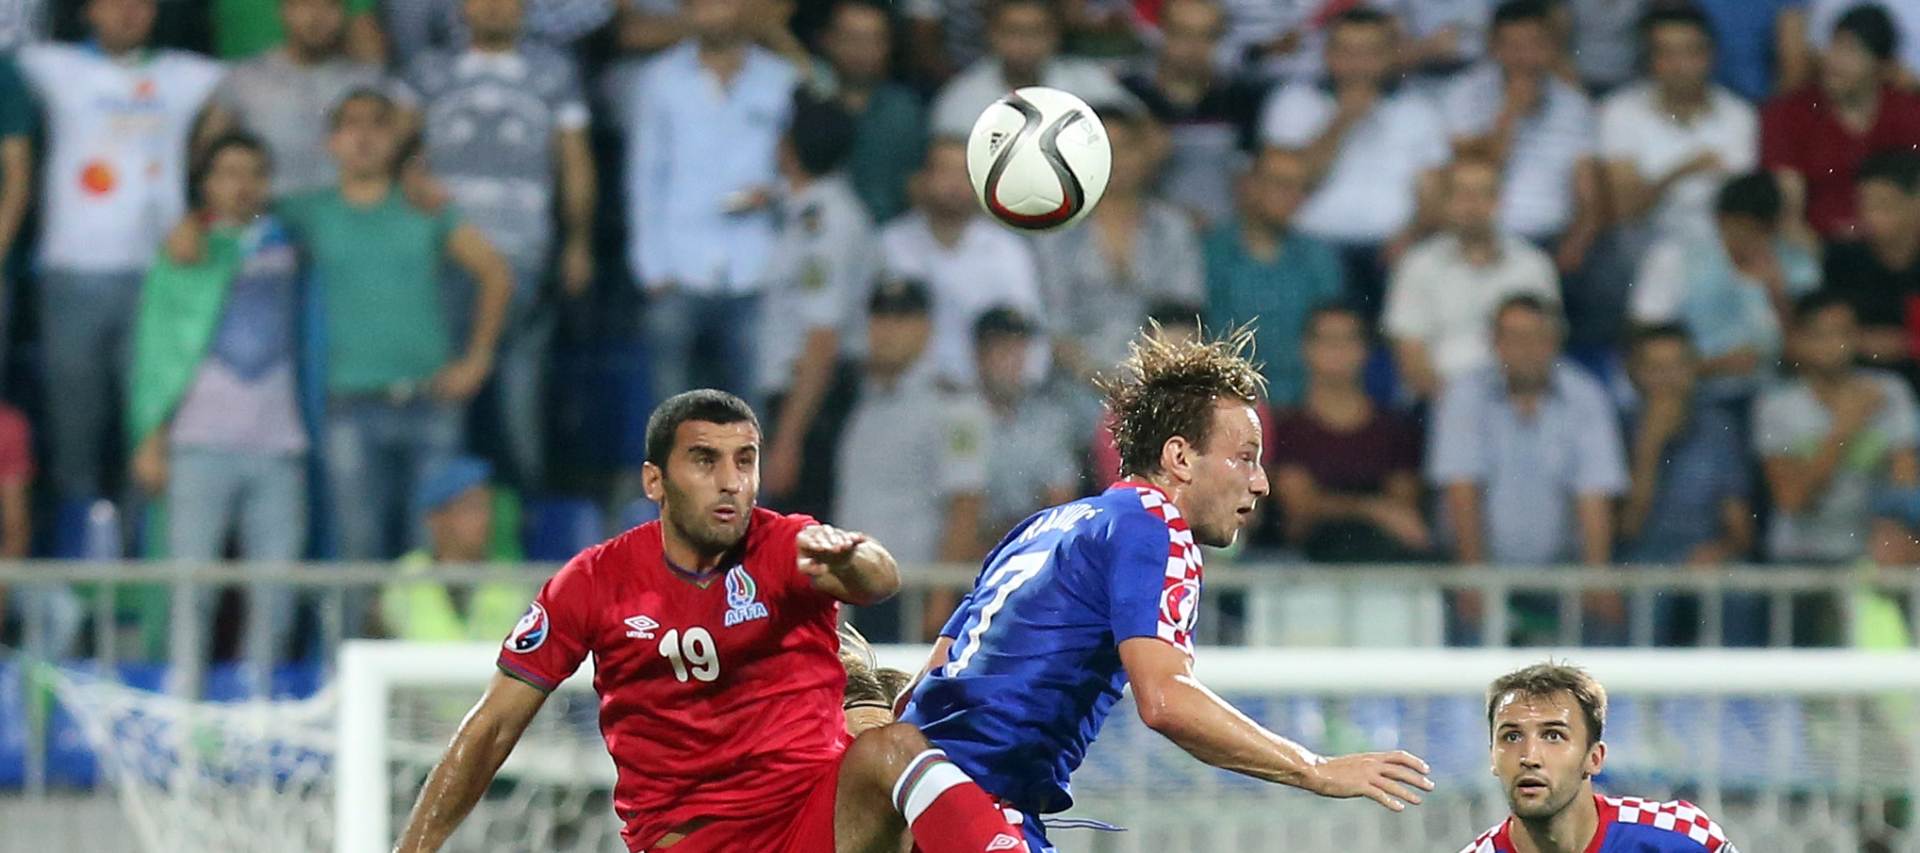 Azerbajdžan – Hrvatska 0-0:  Neprecizna Hrvatska nije uspjela svladati Azerbajdžan